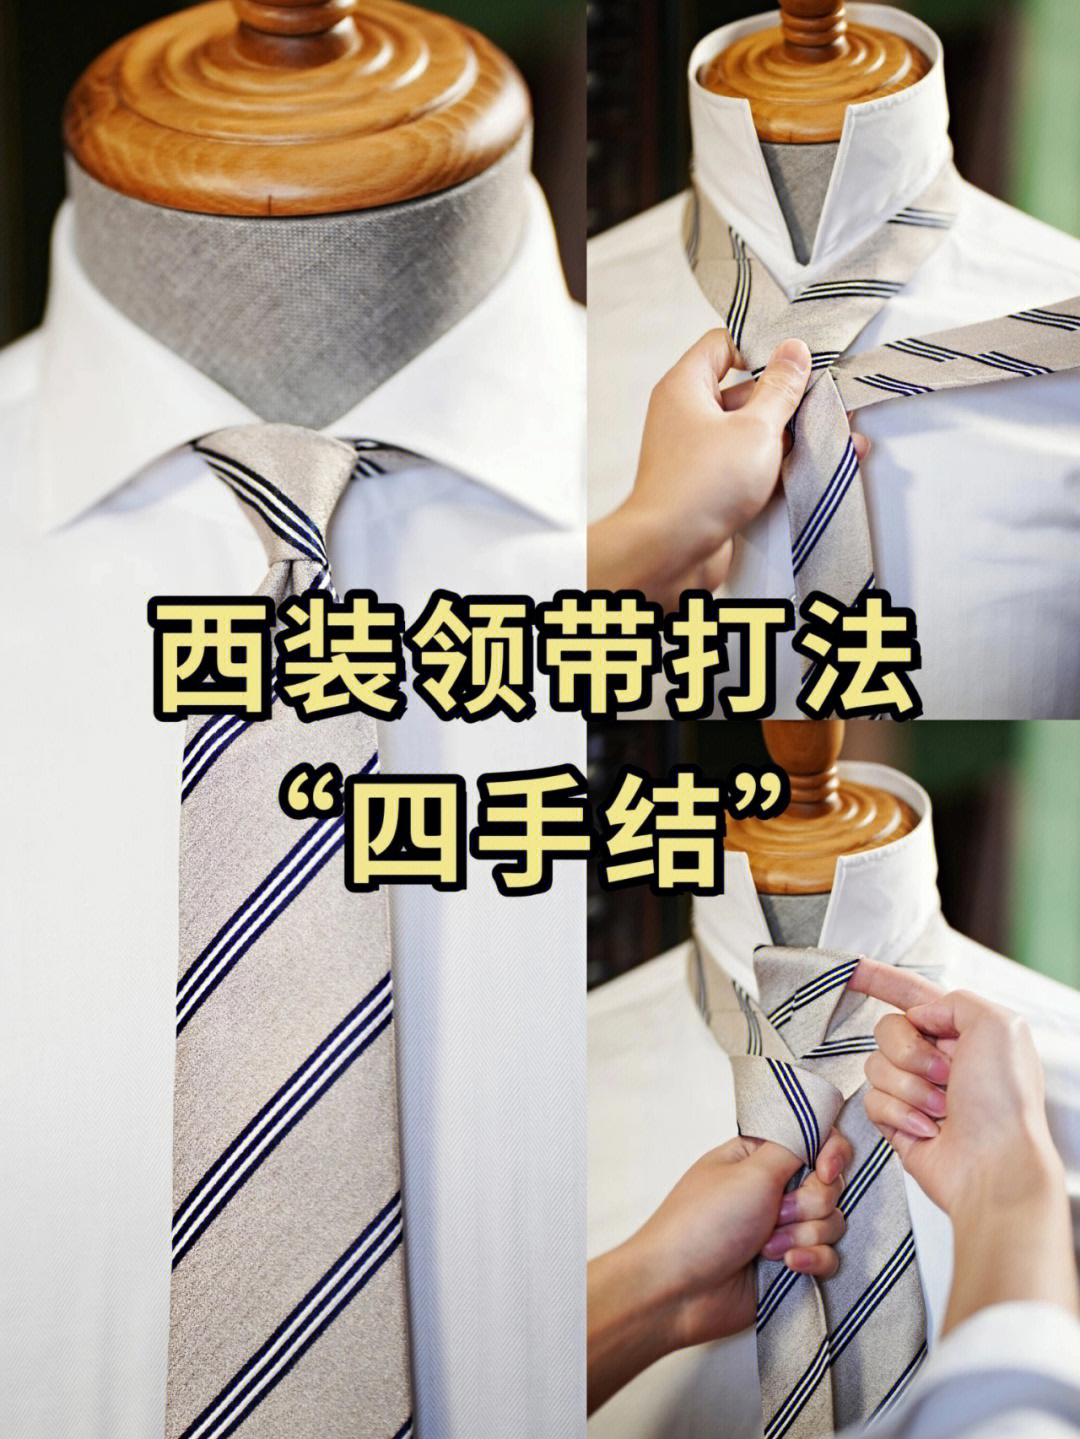 四手结领带打法图片